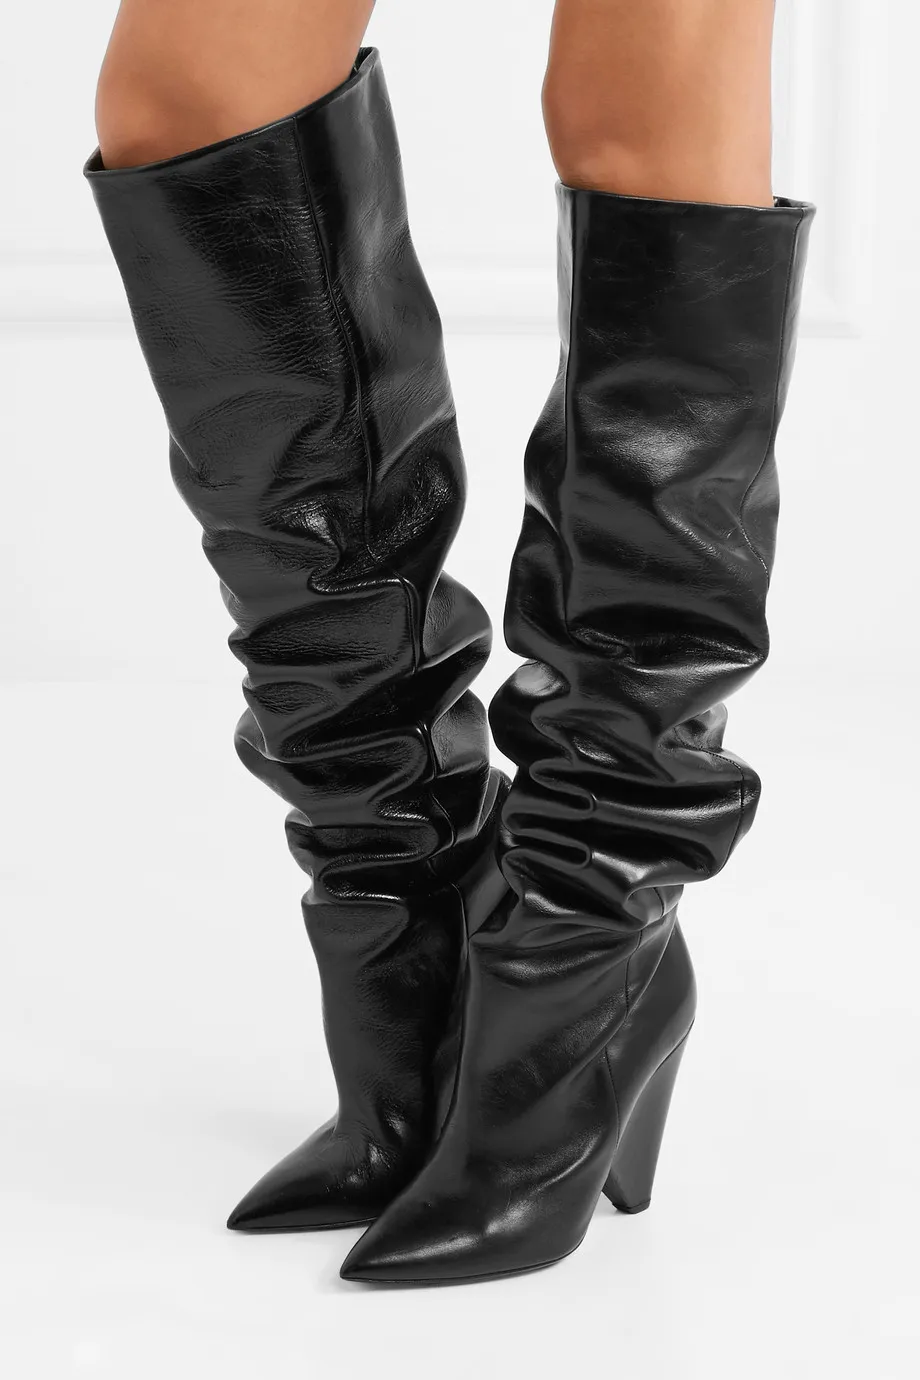 2017 mode femmes botte en cuir noir genou haute chaussons bout pointu talon pointu bottes chaussures de fête femmes sans lacet mujer botas